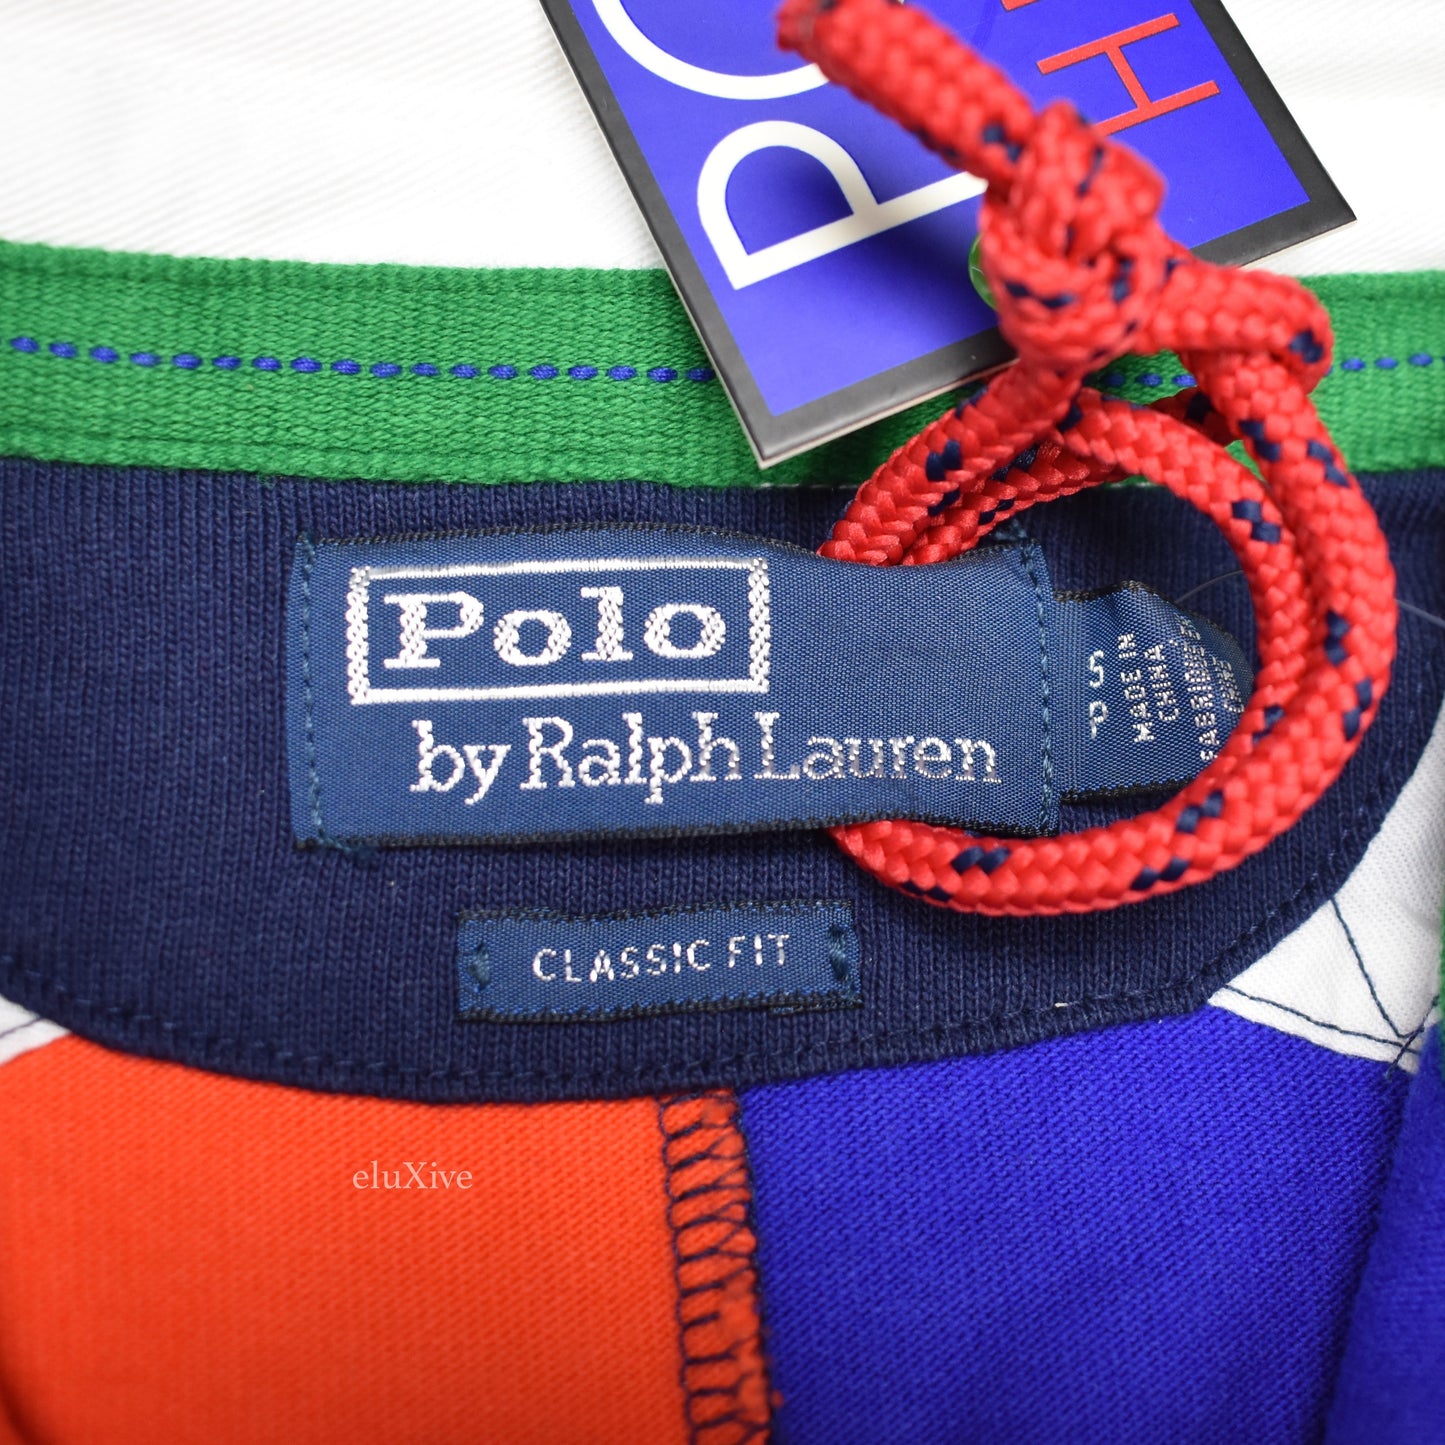 Polo Ralph Lauren - Hi-Tech Rugby Shirt